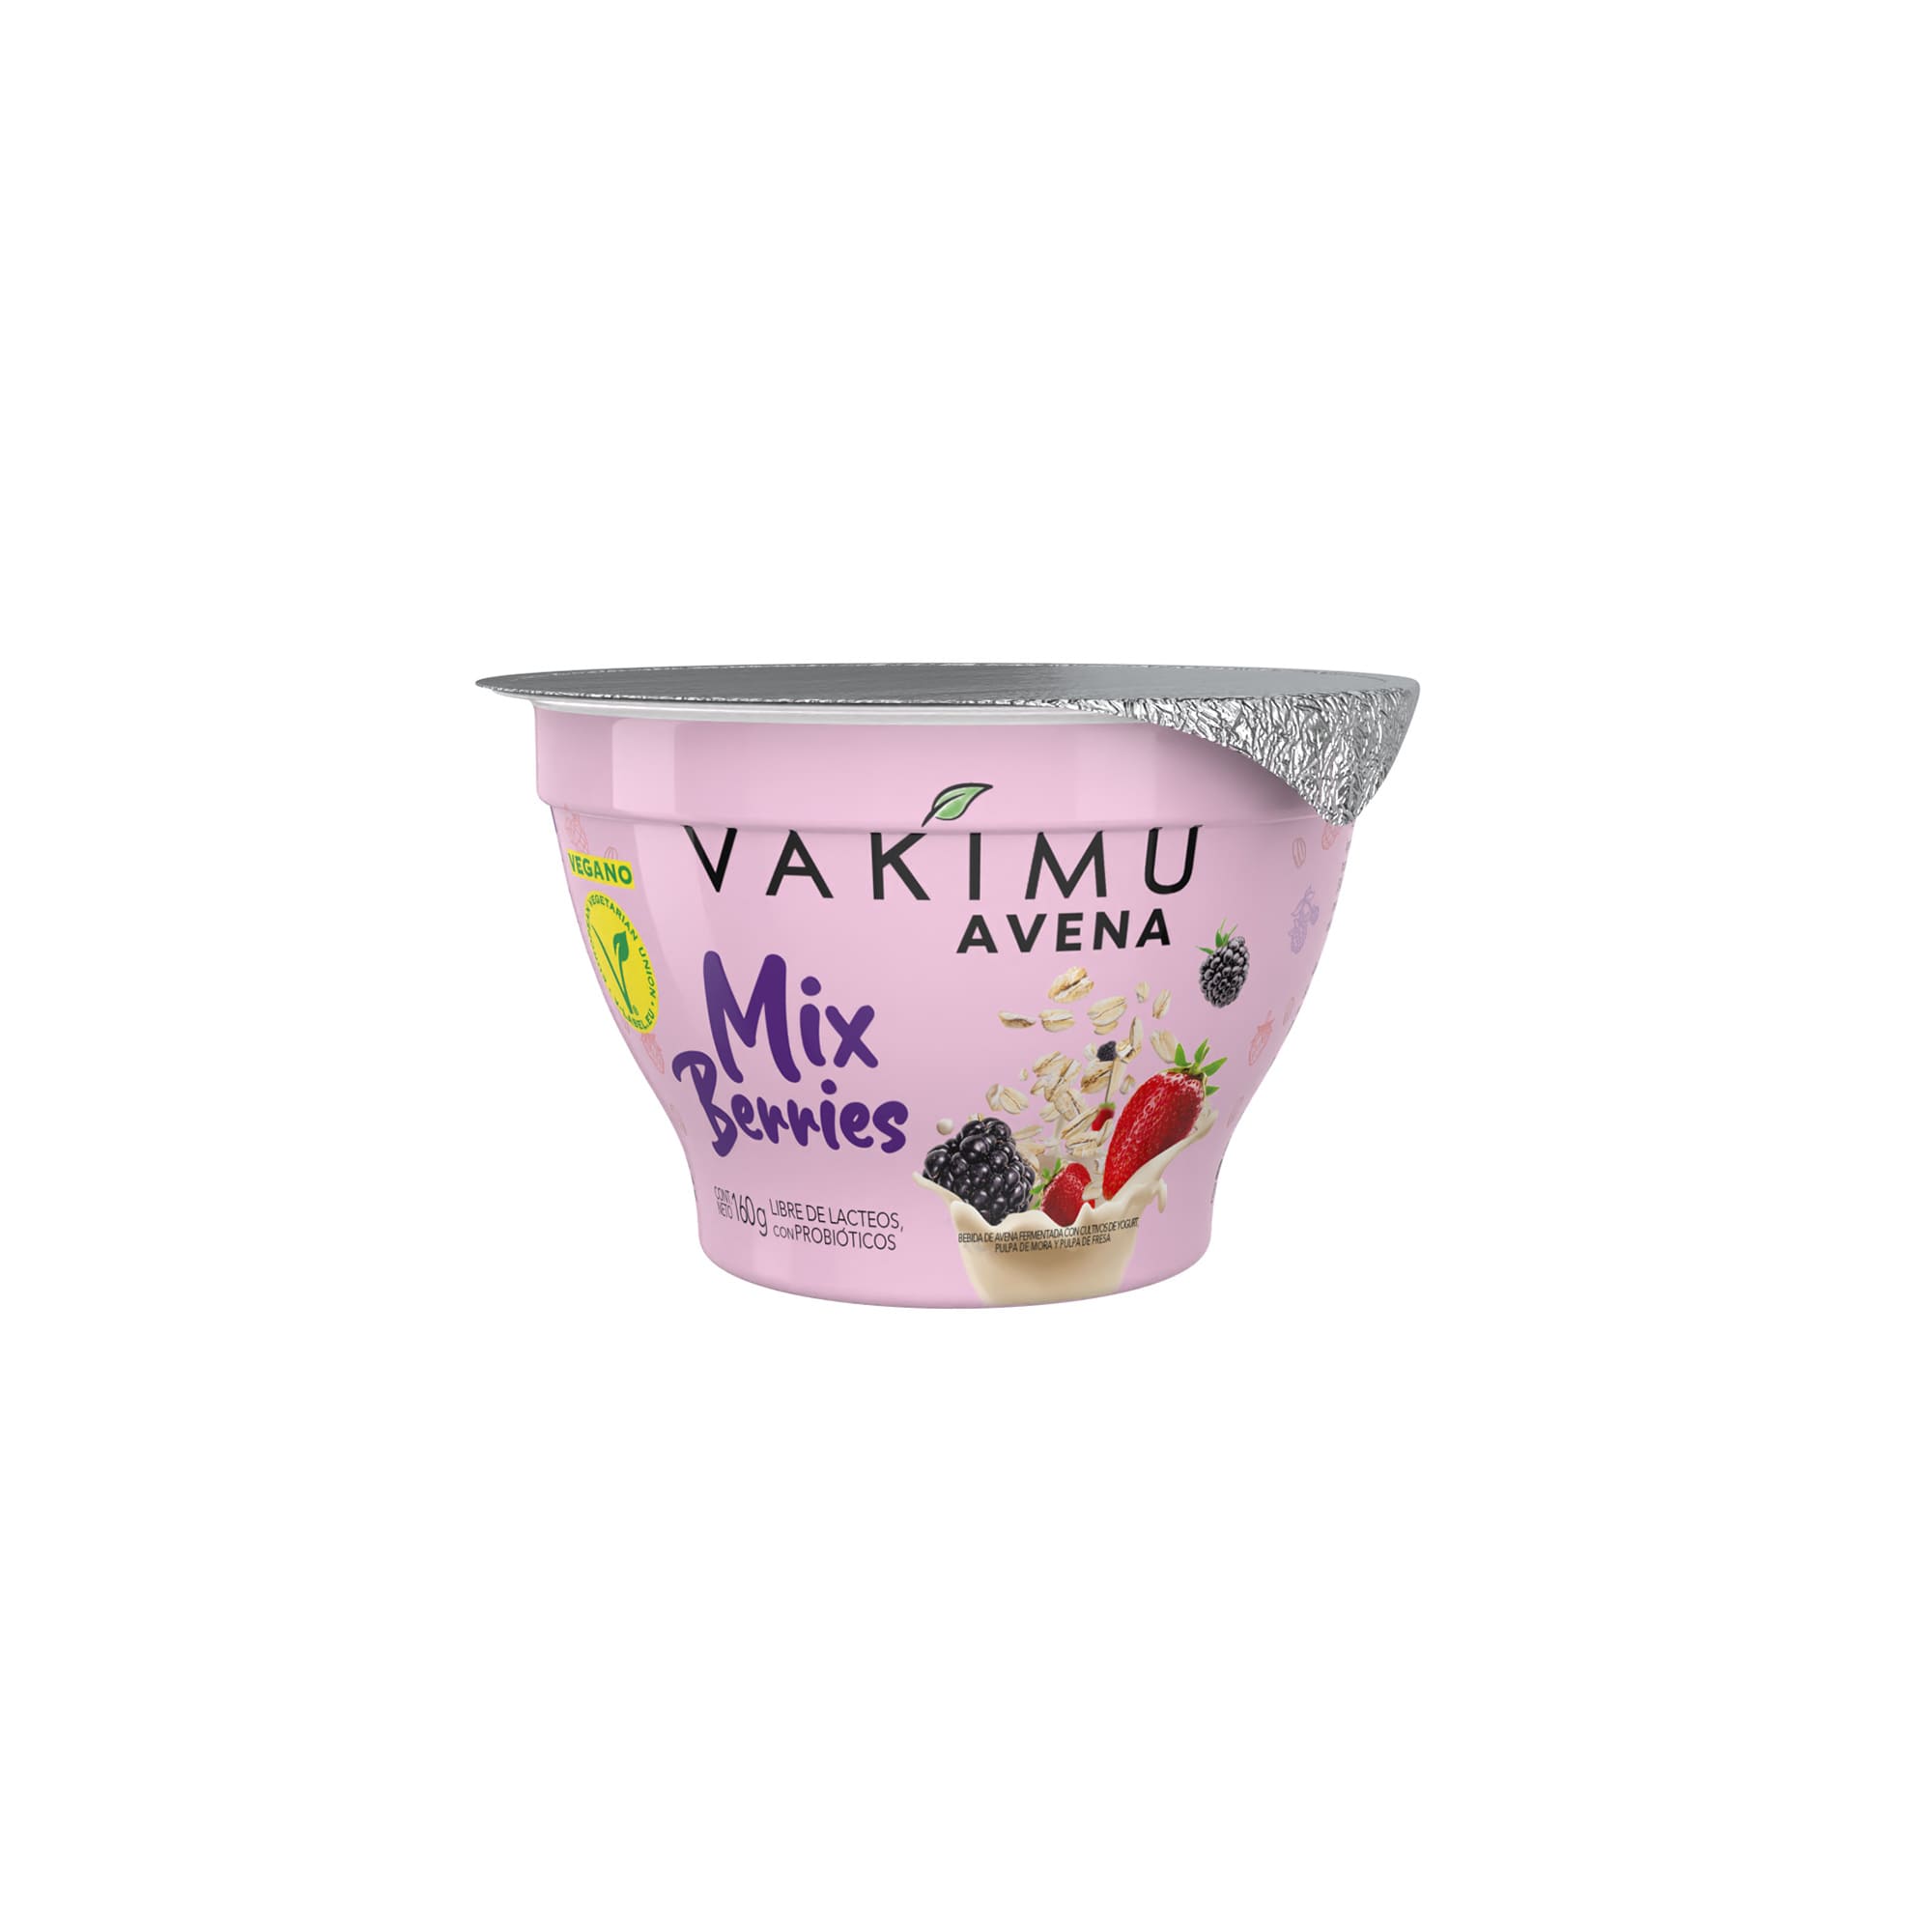 Avena Vakimu Mix Berries 160g